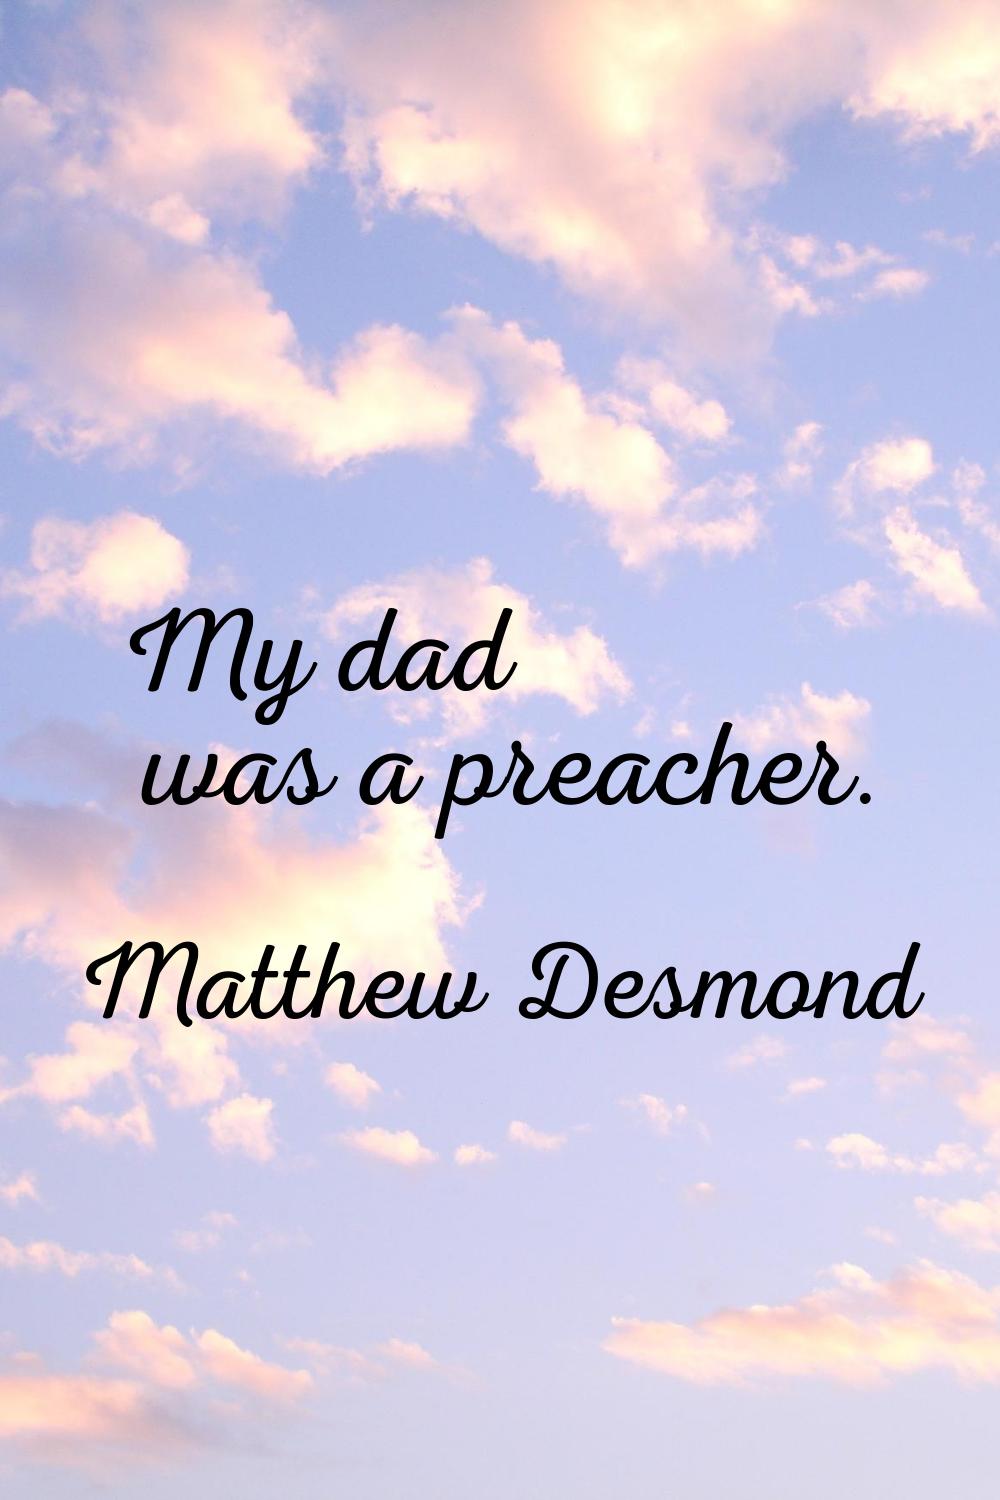 My dad was a preacher.